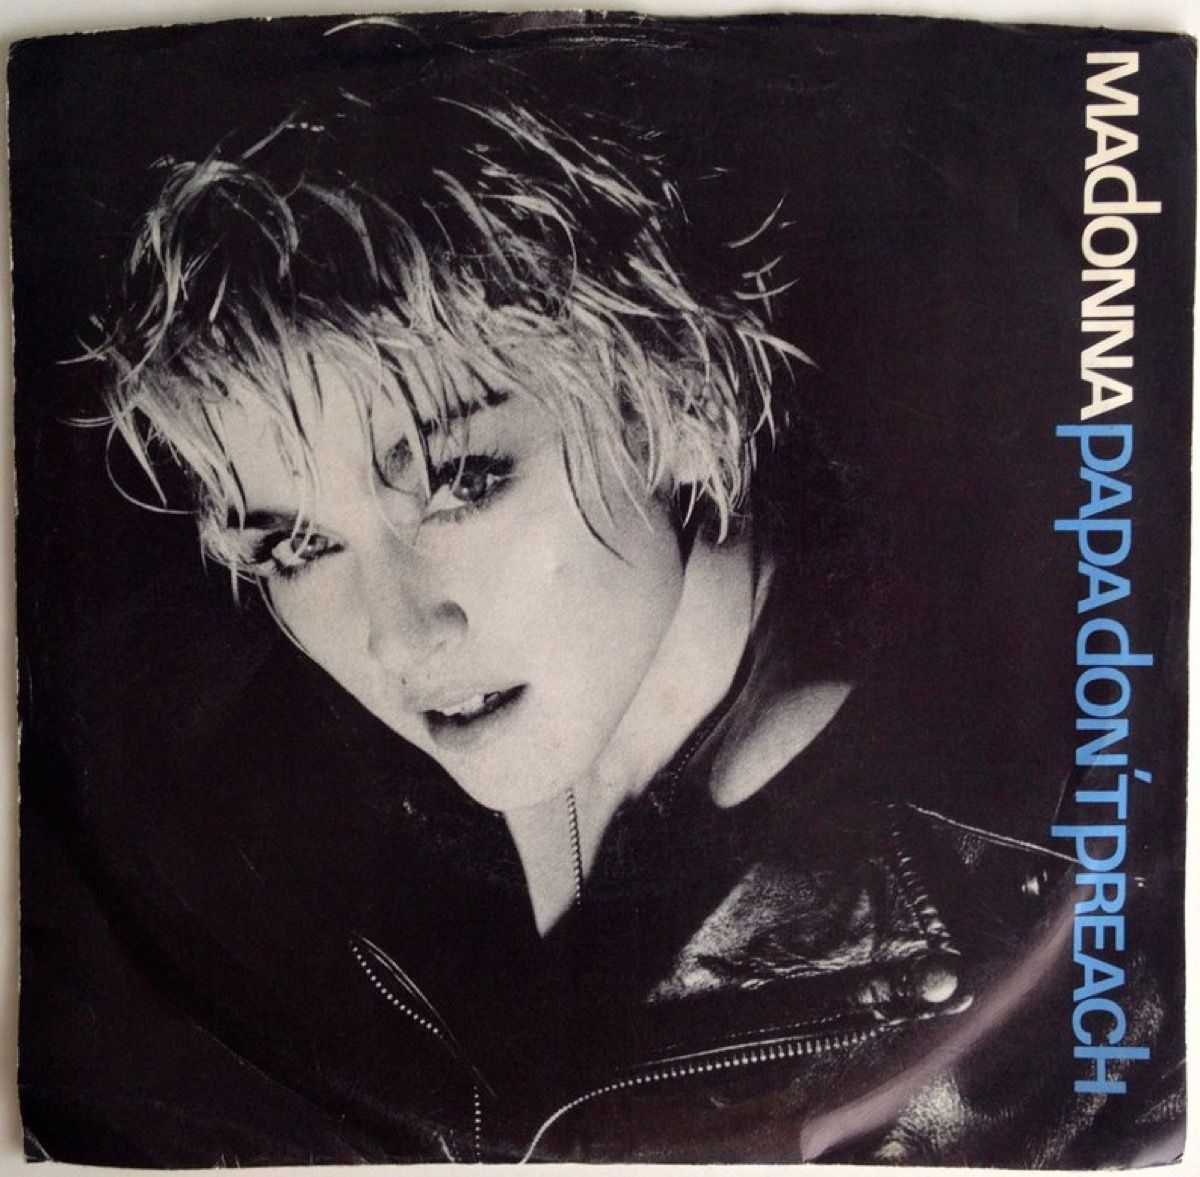 La portada de Madonna para Papa Dont Preach incluye cantante con corte pixie, canción del verano de 1986